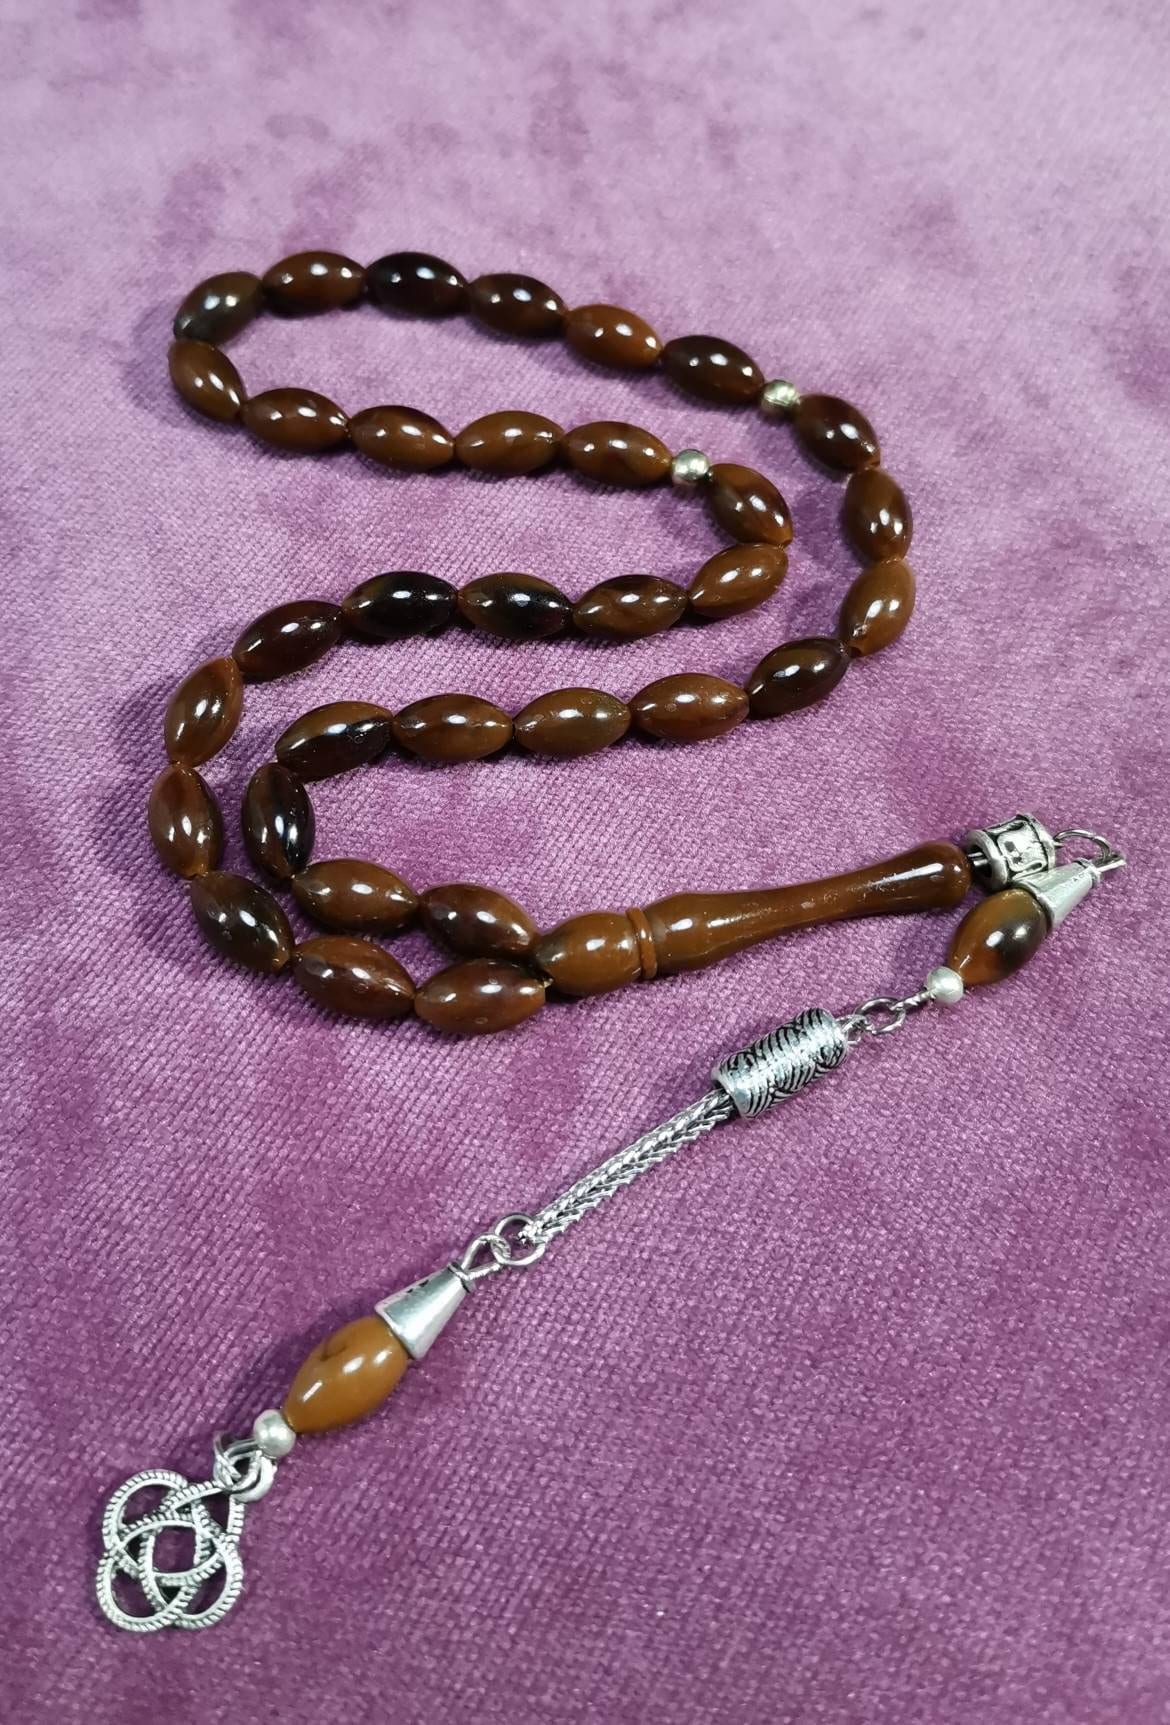 Brown Amber Tasbih Turkish Prayer Beads 33 Pcs Islamic | Etsy